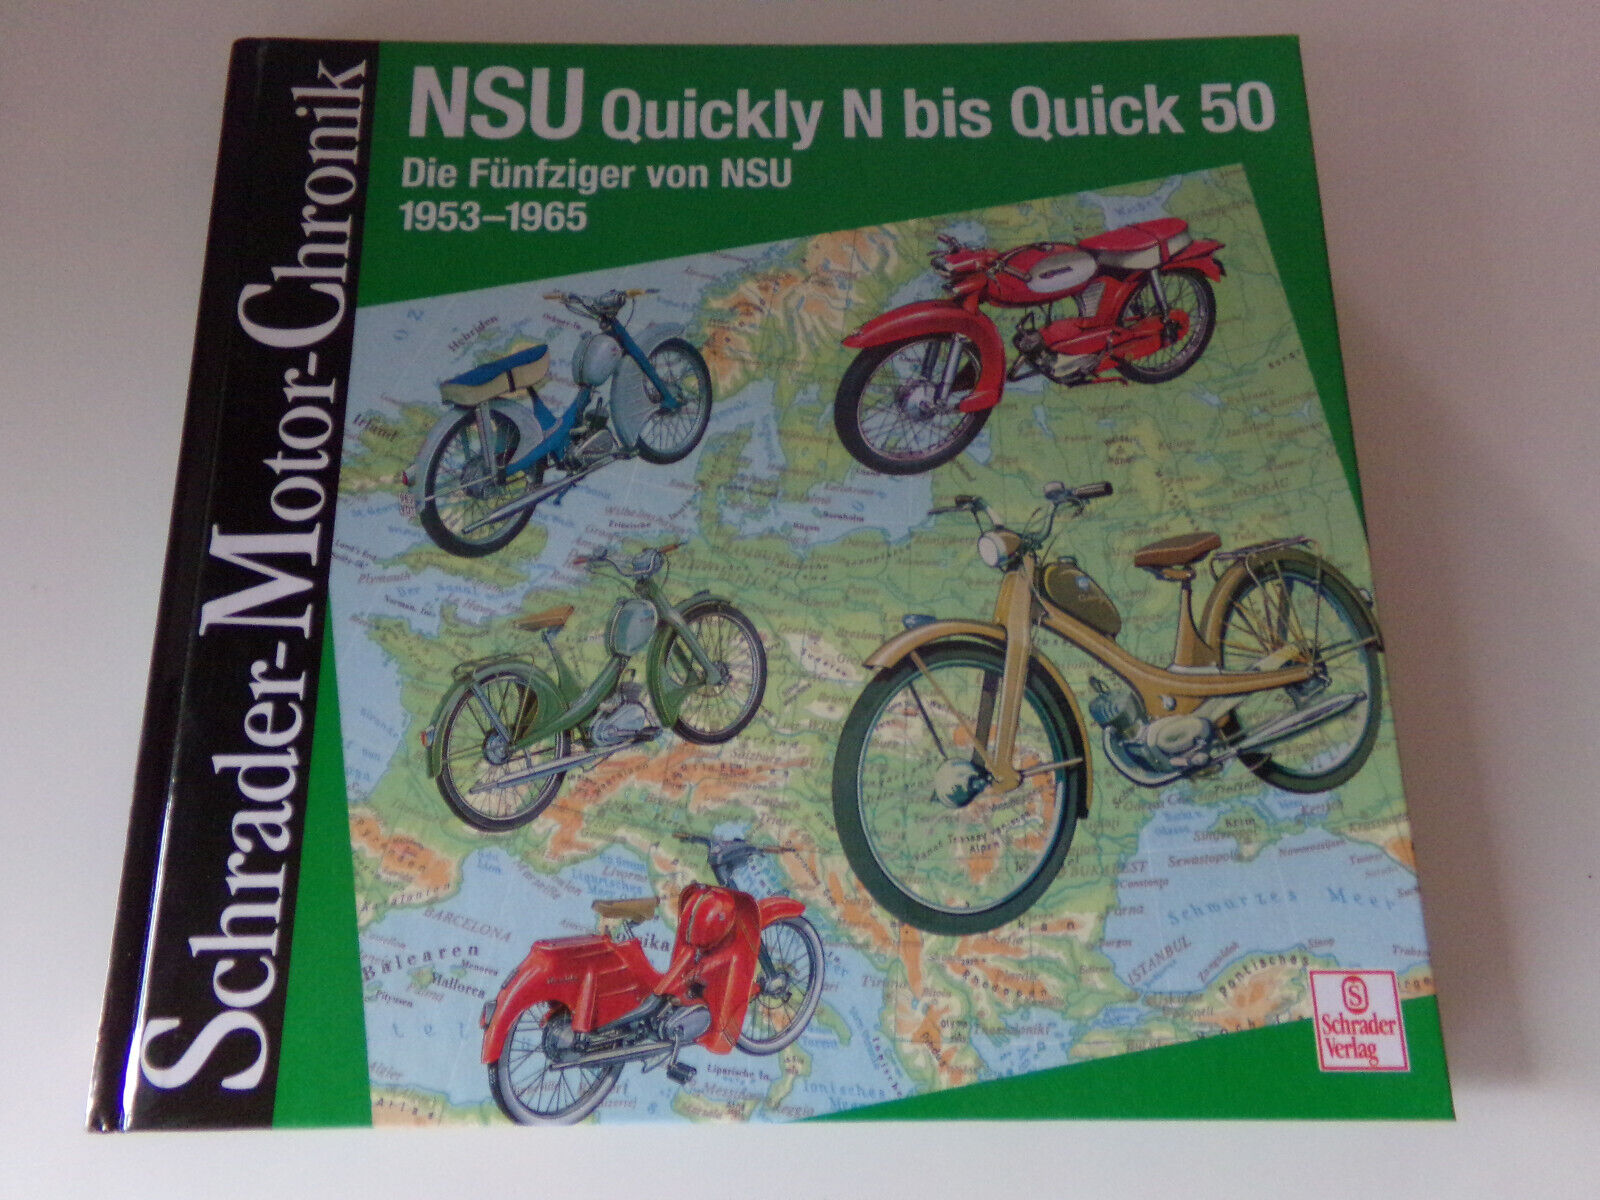 NSU Quickly N bis Quick 50 * Die Fünfziger von NSU 1953 bis 1965 Schrader Motor - Unbekannt